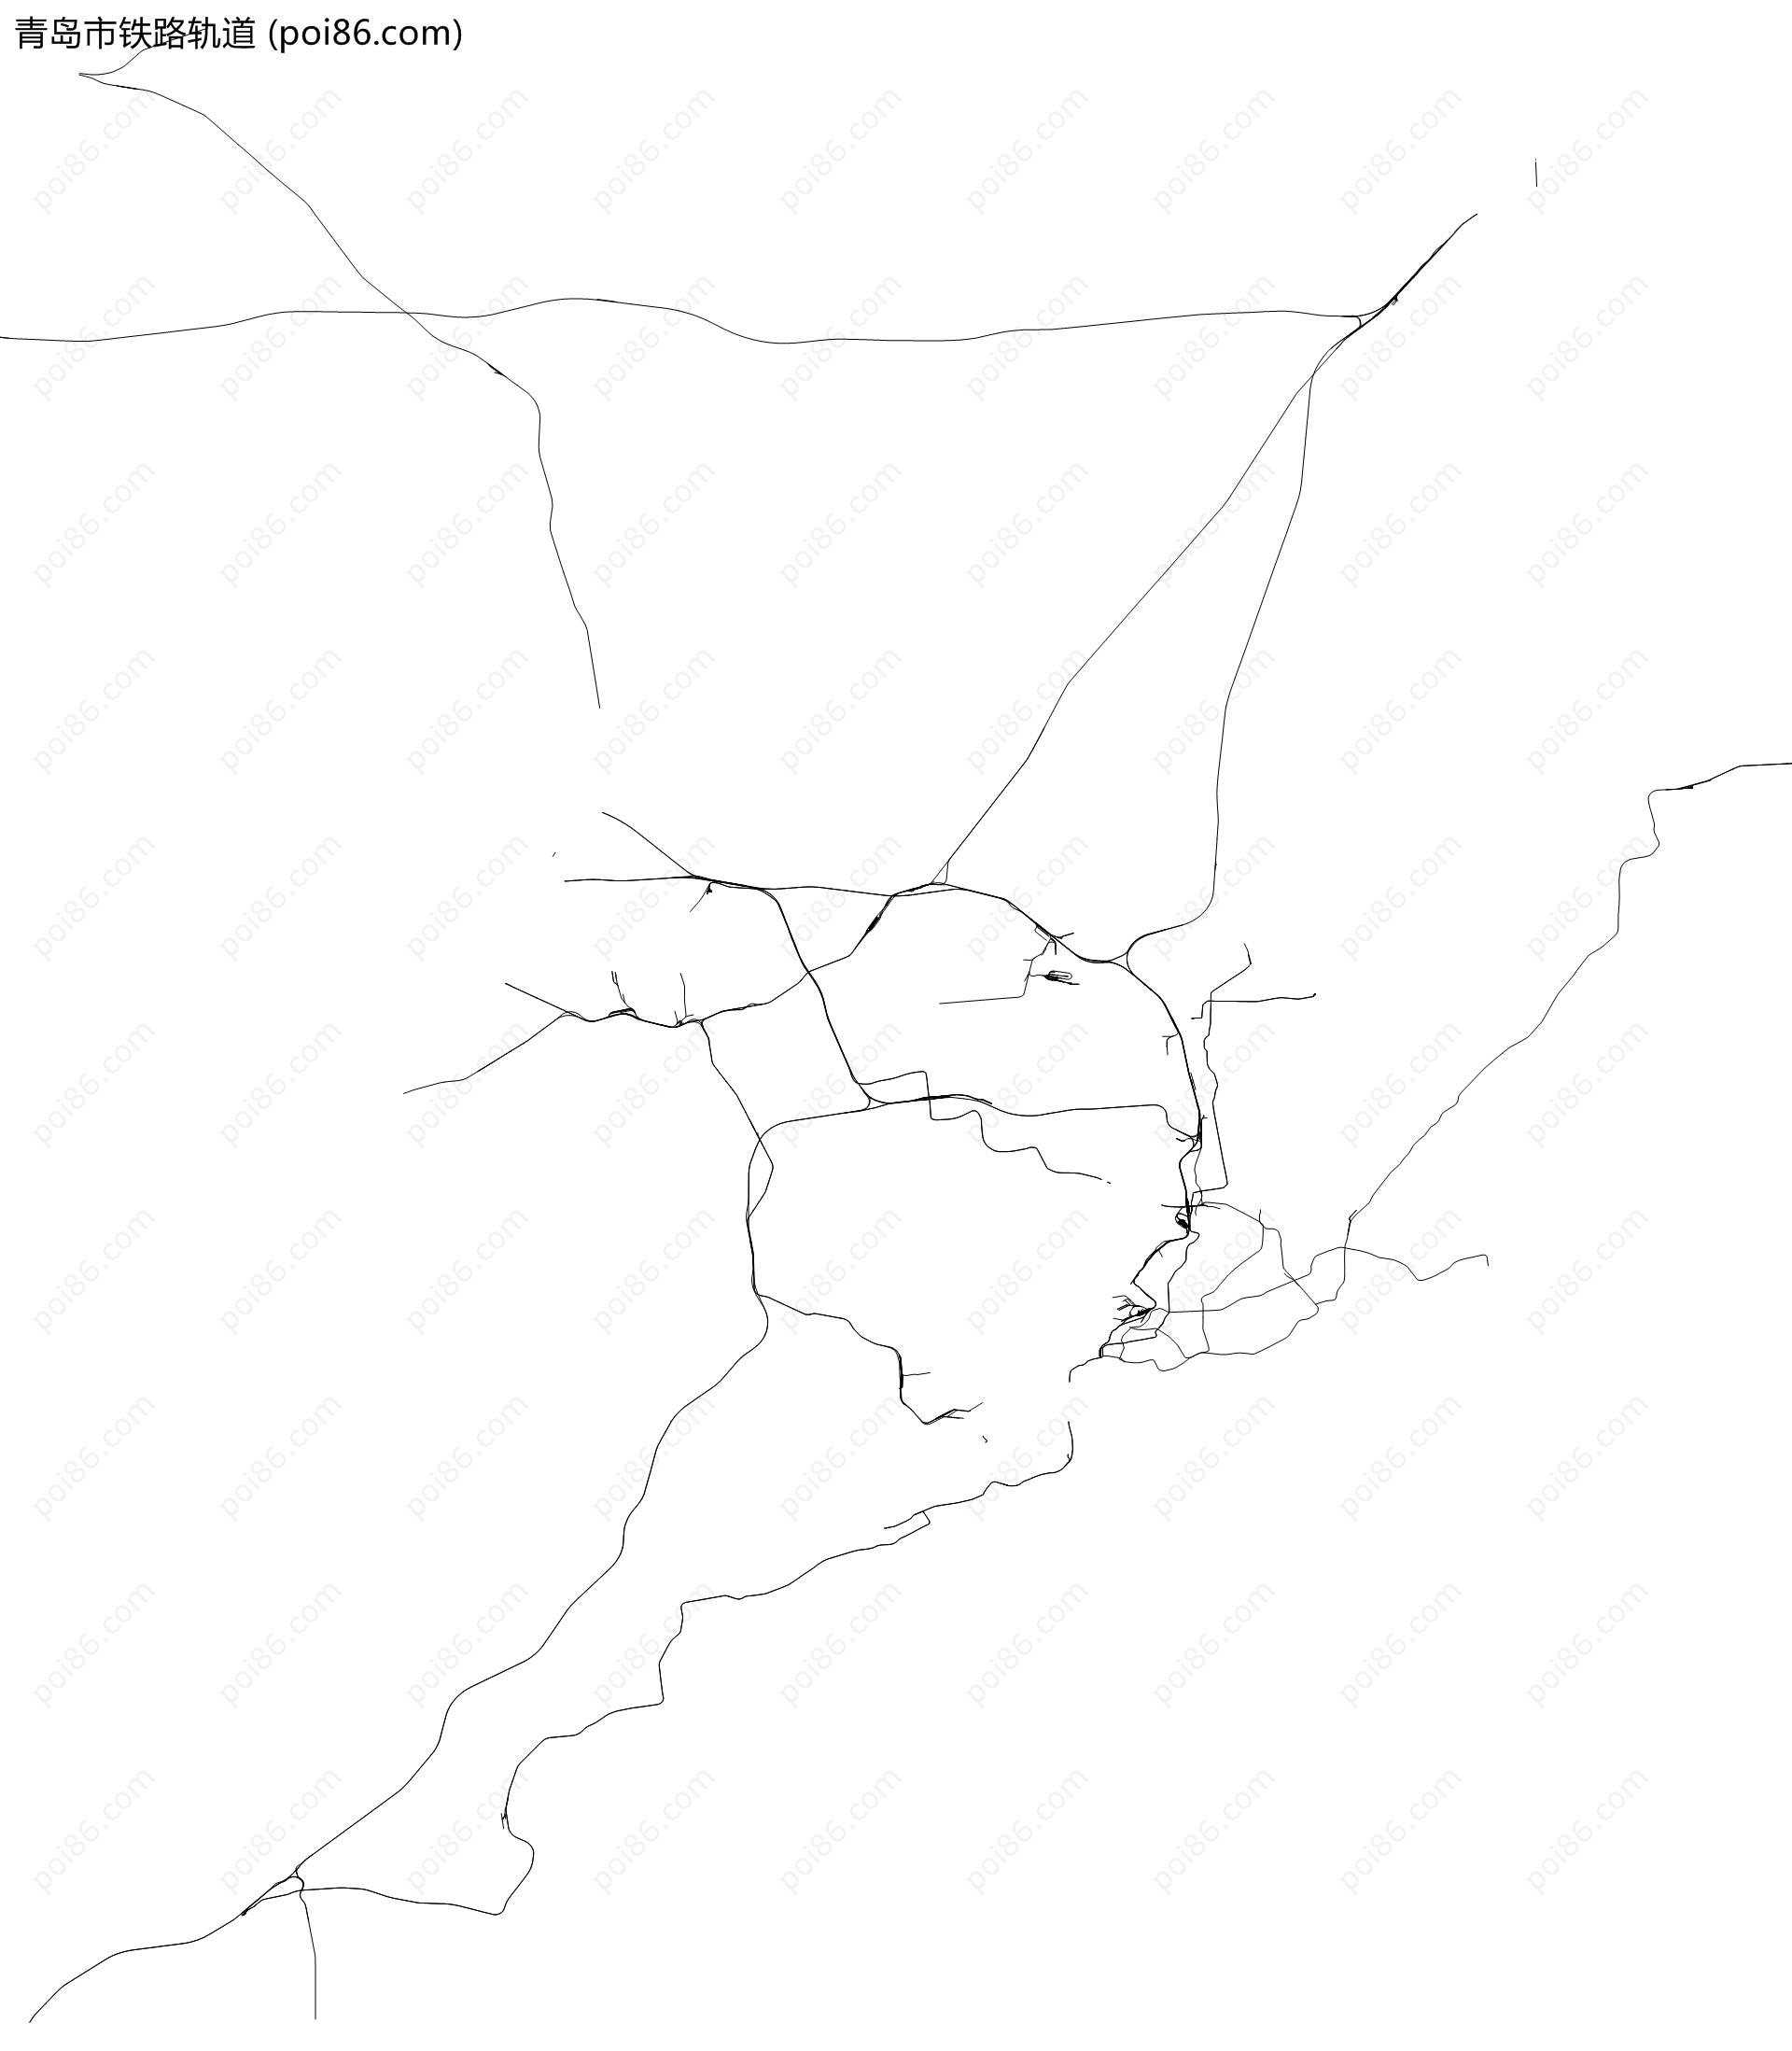 青岛市铁路轨道地图